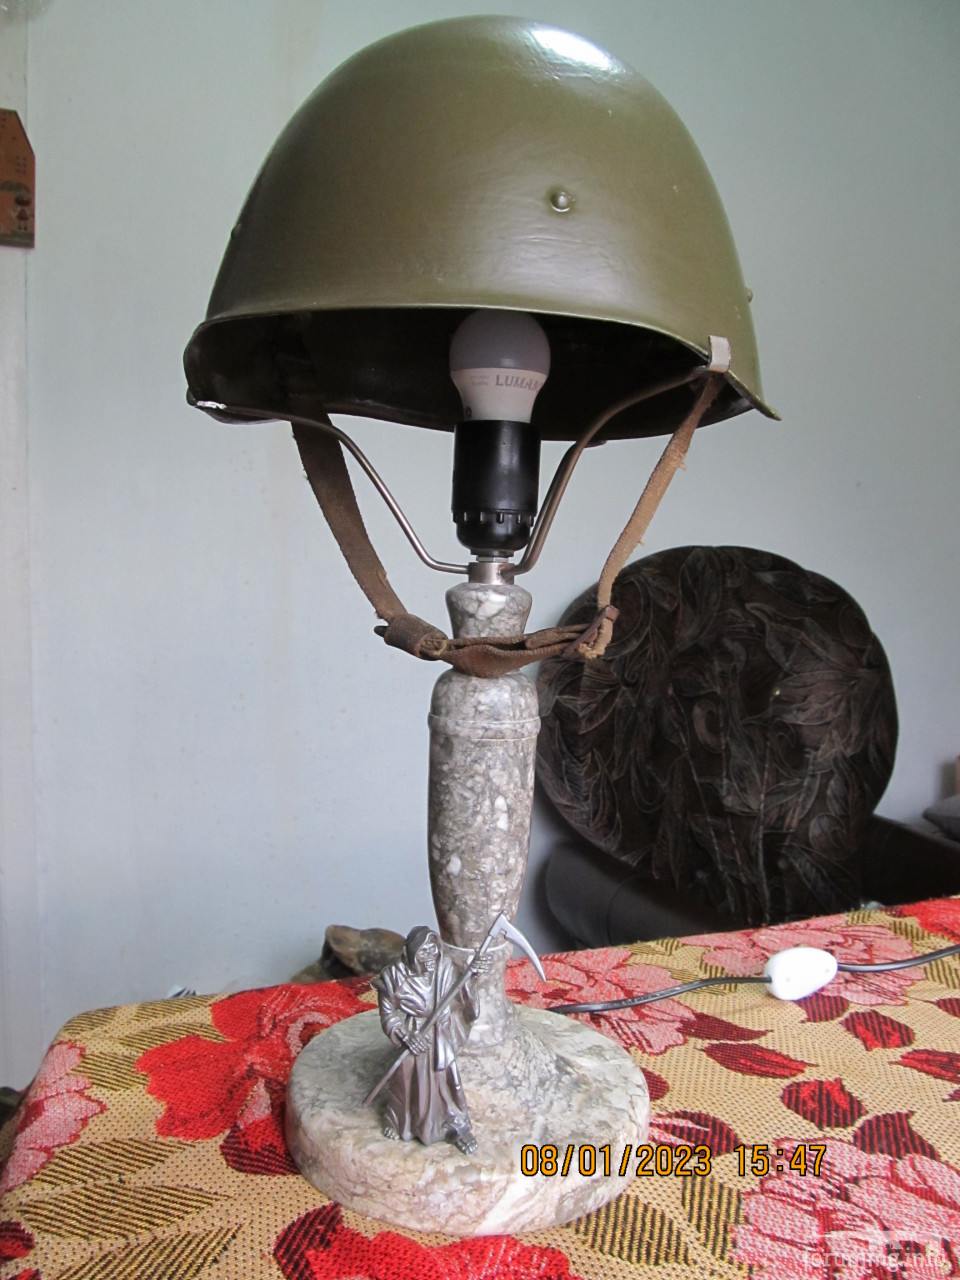 127861 - Кам"яна настільна лампа 30-х р.р. в стилі "мілітарі"